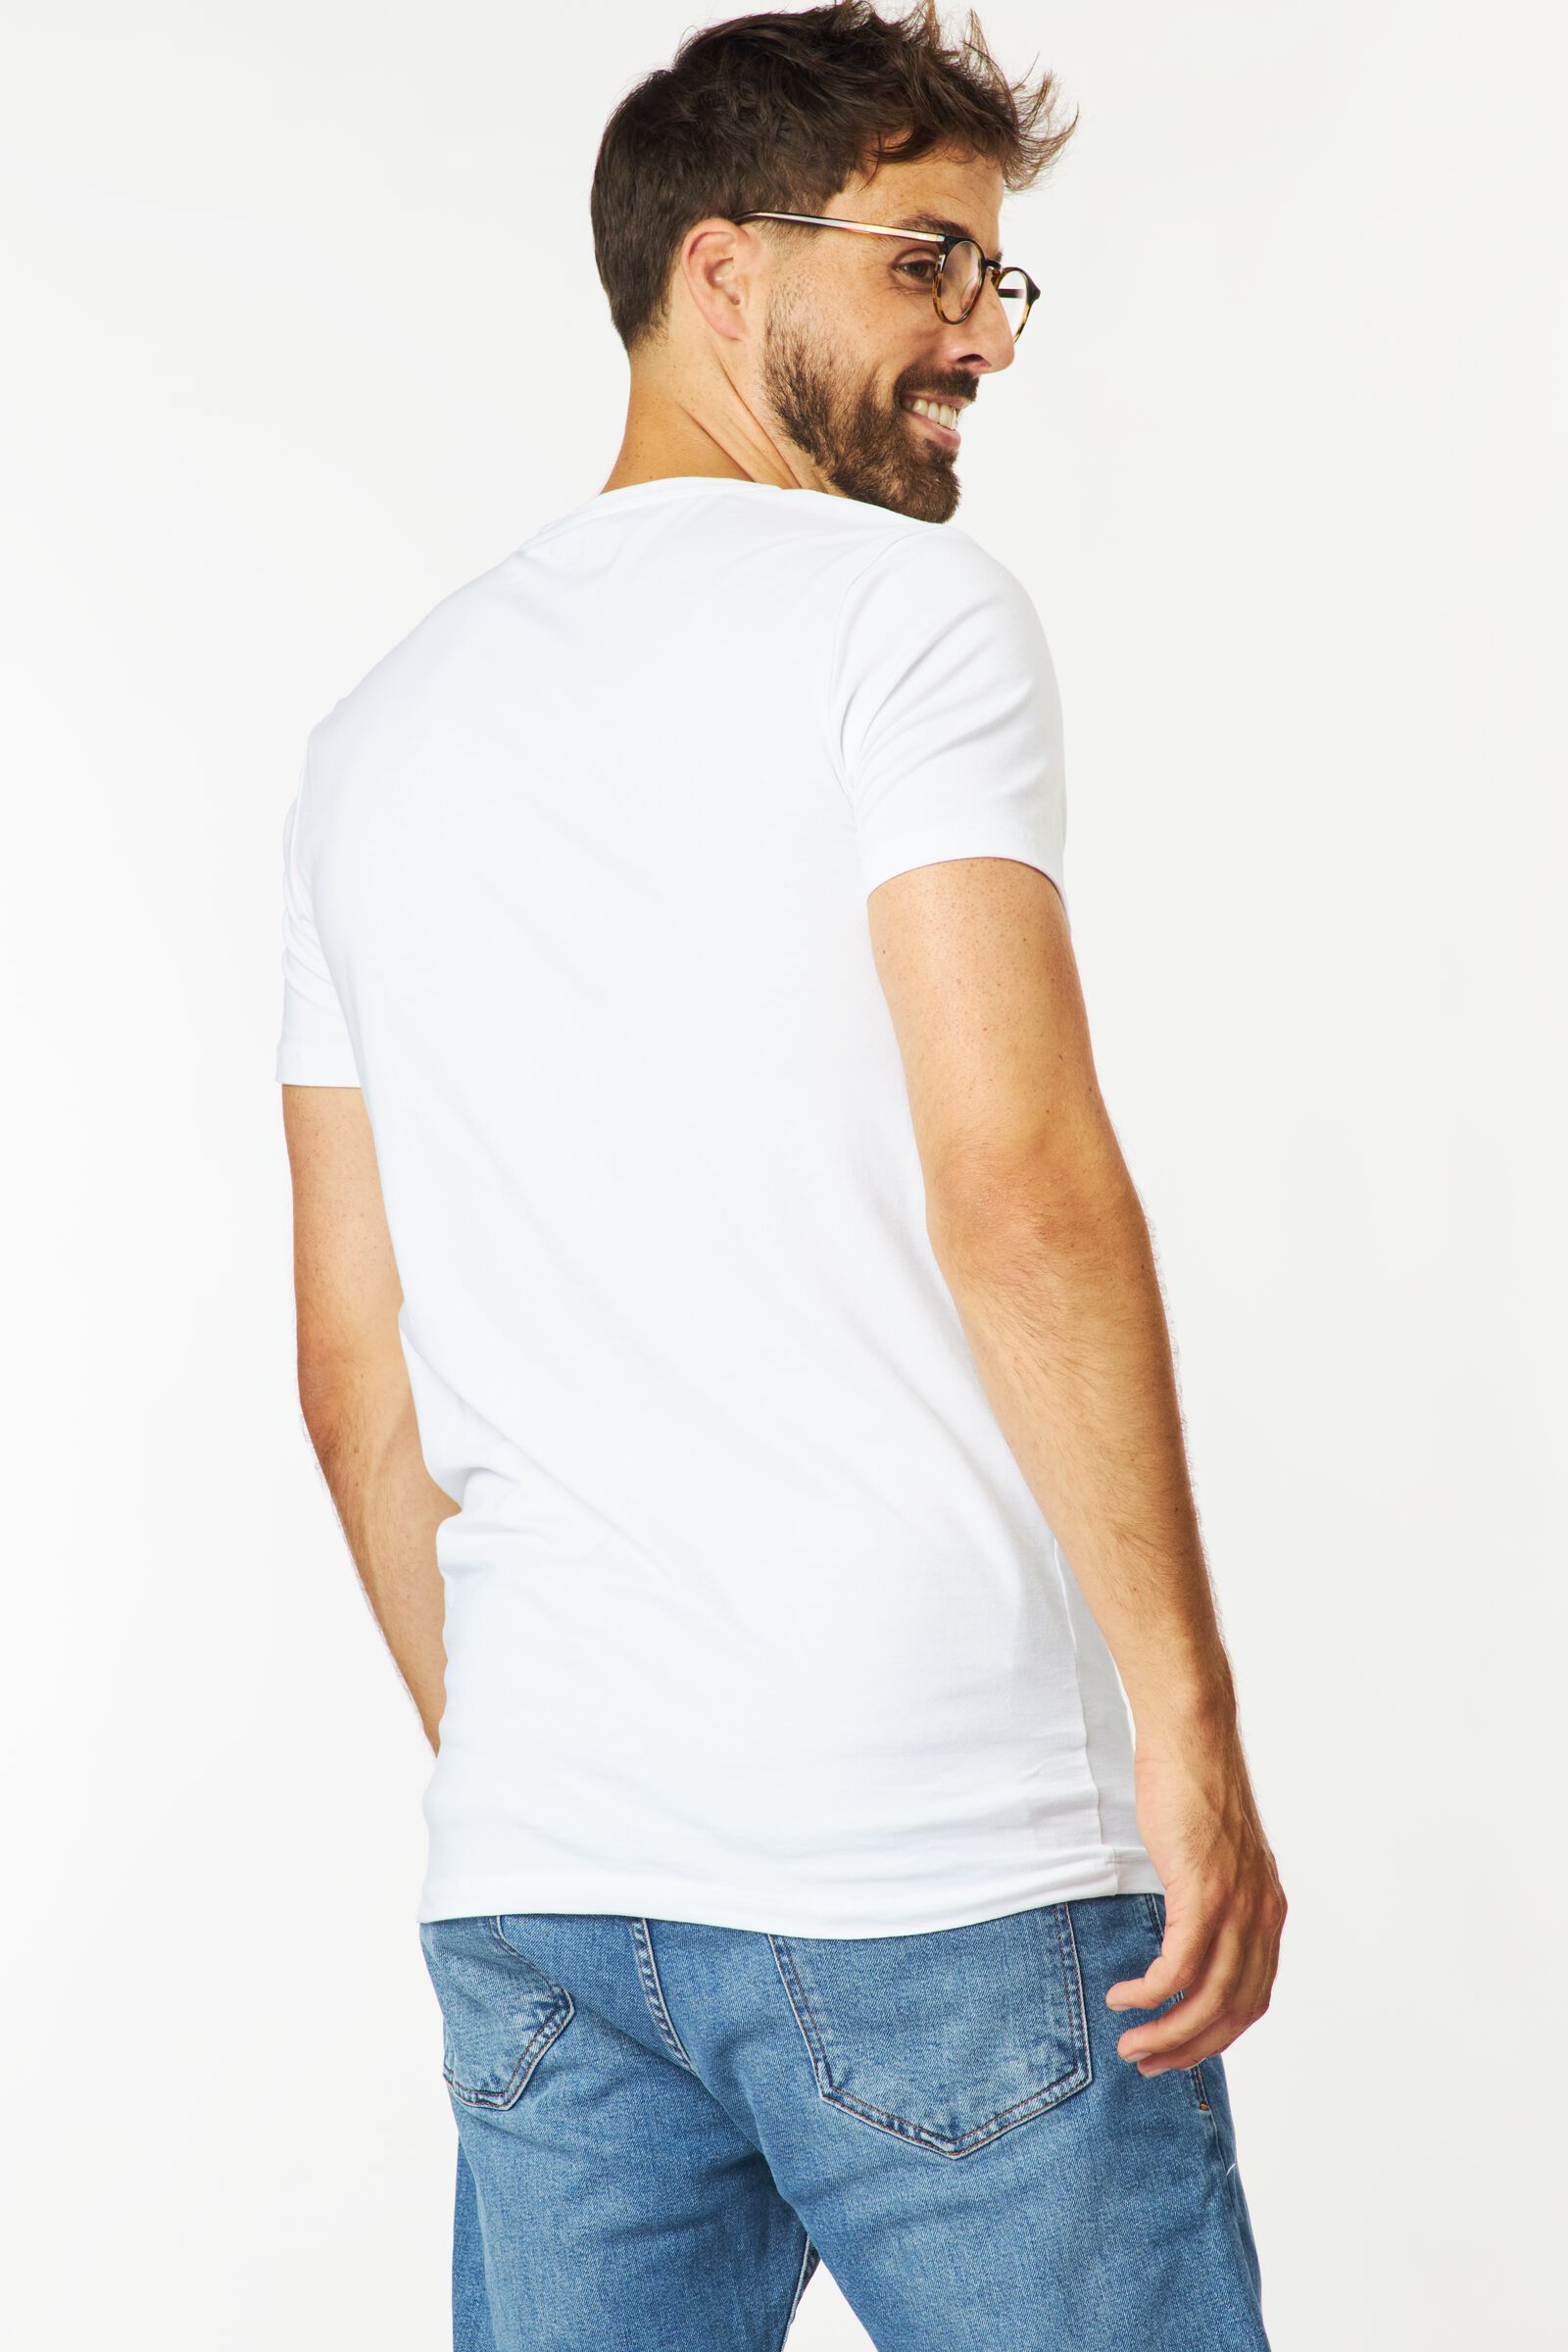 Herren-T-Shirt, Slim Fit, V-Ausschnitt , extralang weiß M - 34276864 - HEMA